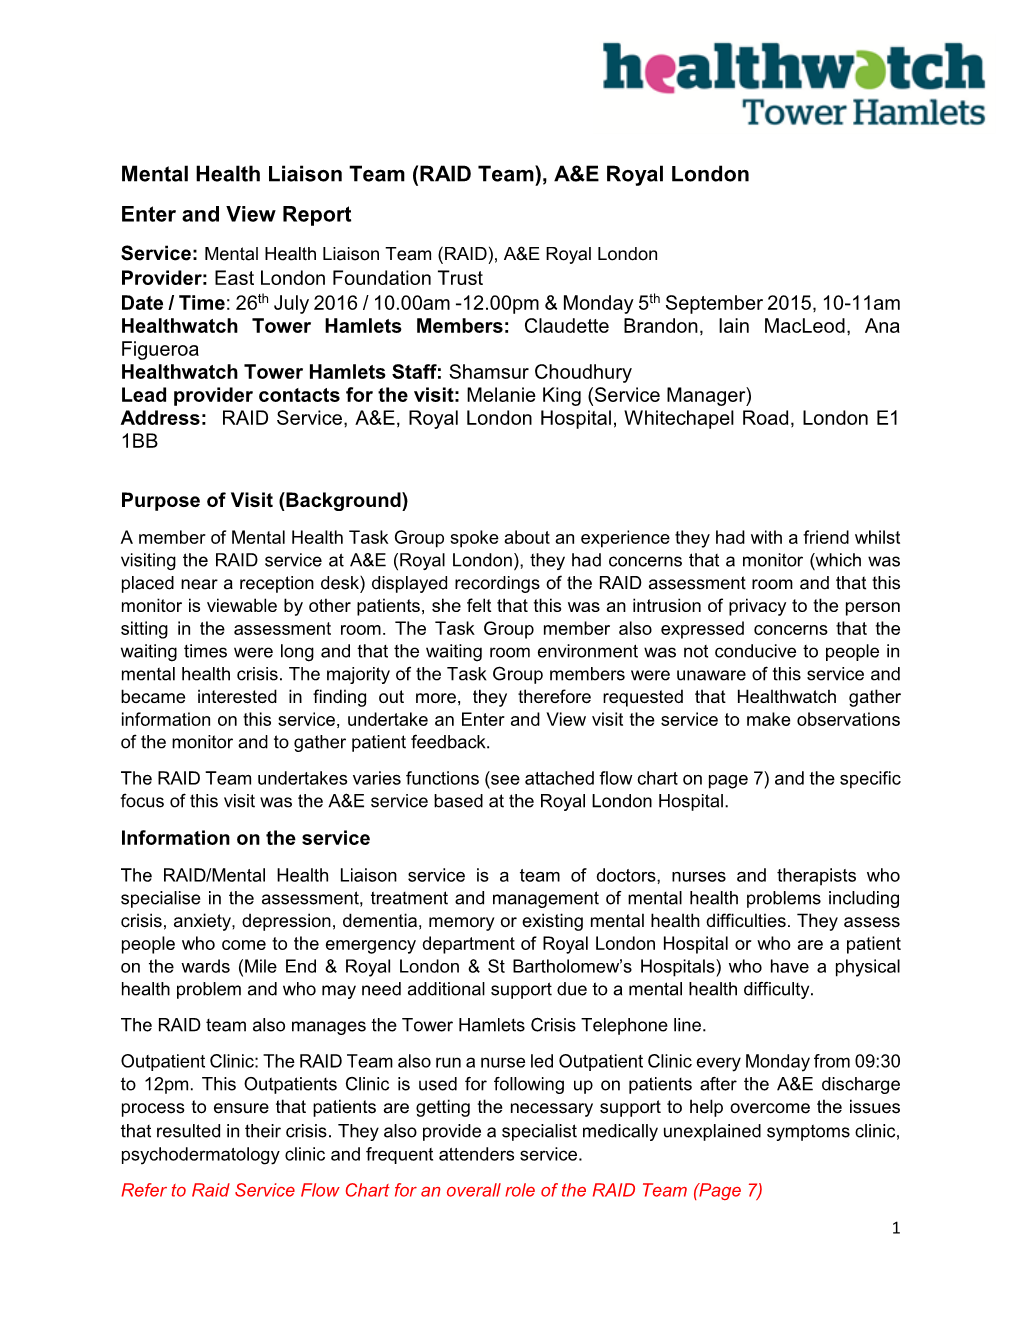 Mental Health Liaison Team (RAID Team), A&E Royal London Enter